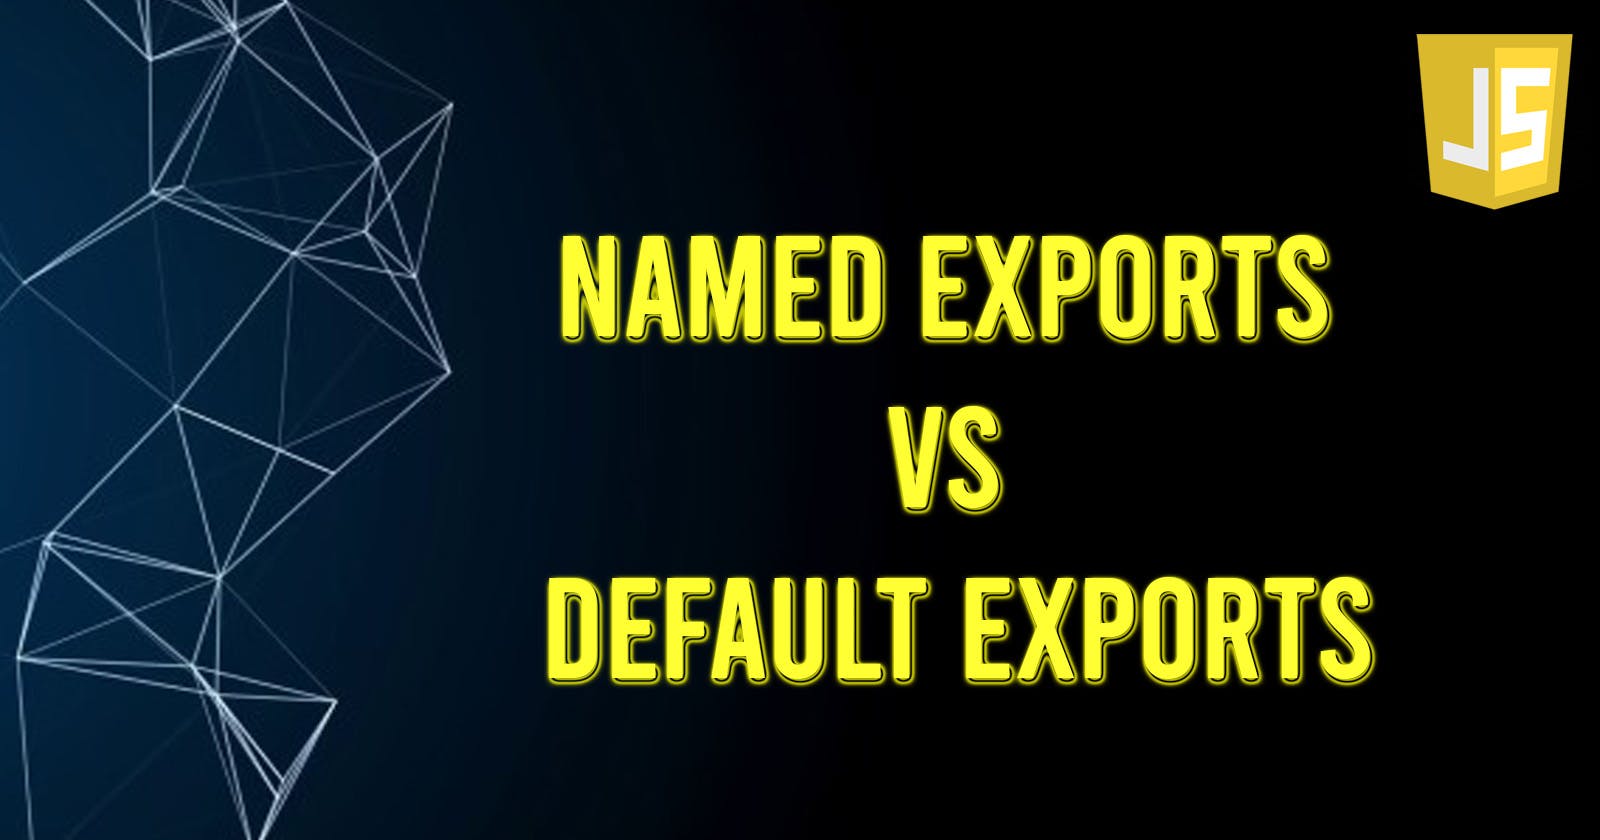 Named exports vs Default exports